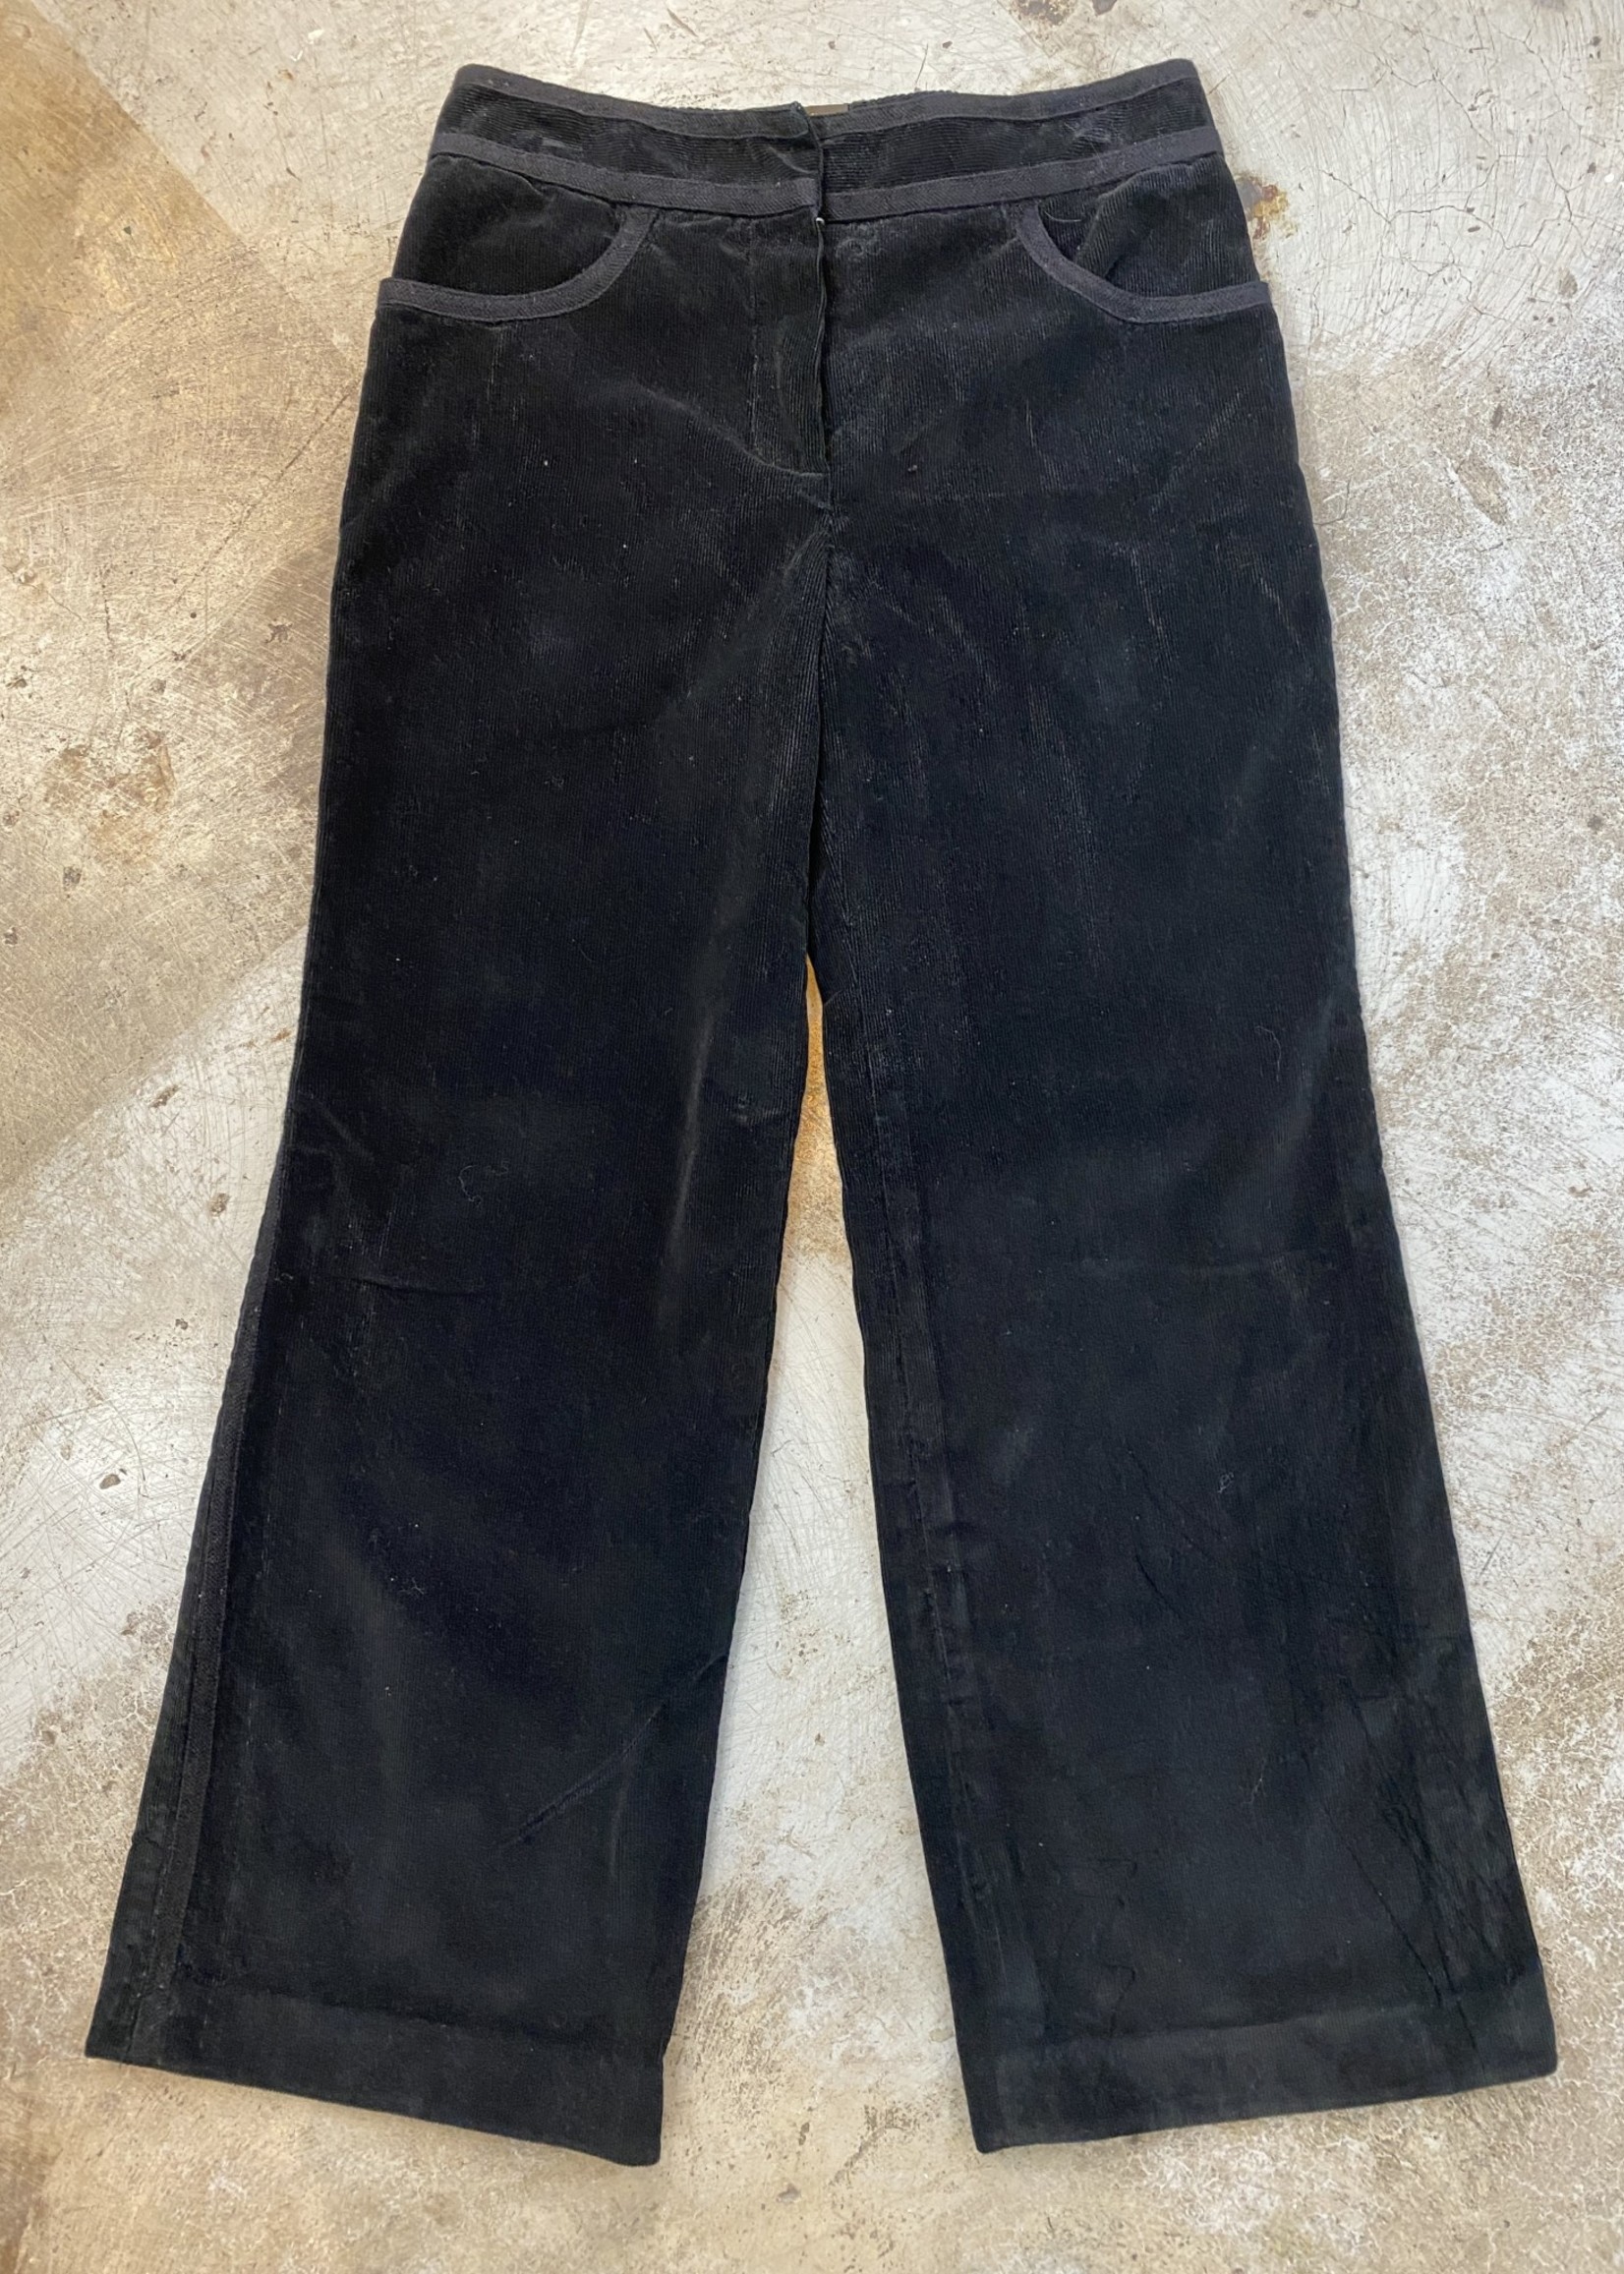 Louis Vuitton Uniform Black Corduroy Flare Pants 28